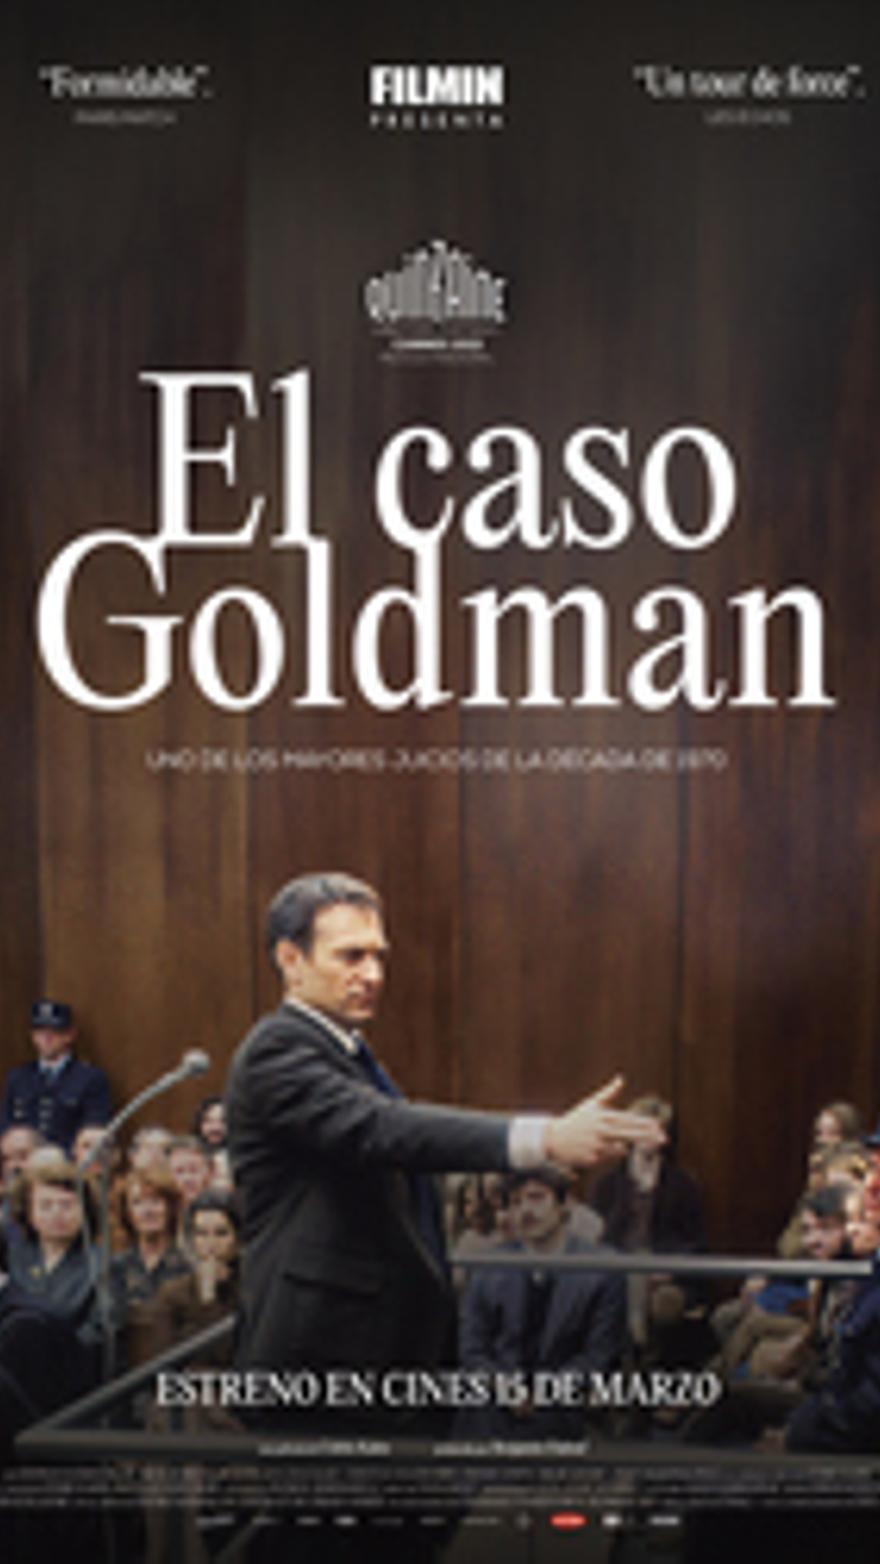 El caso Goldman